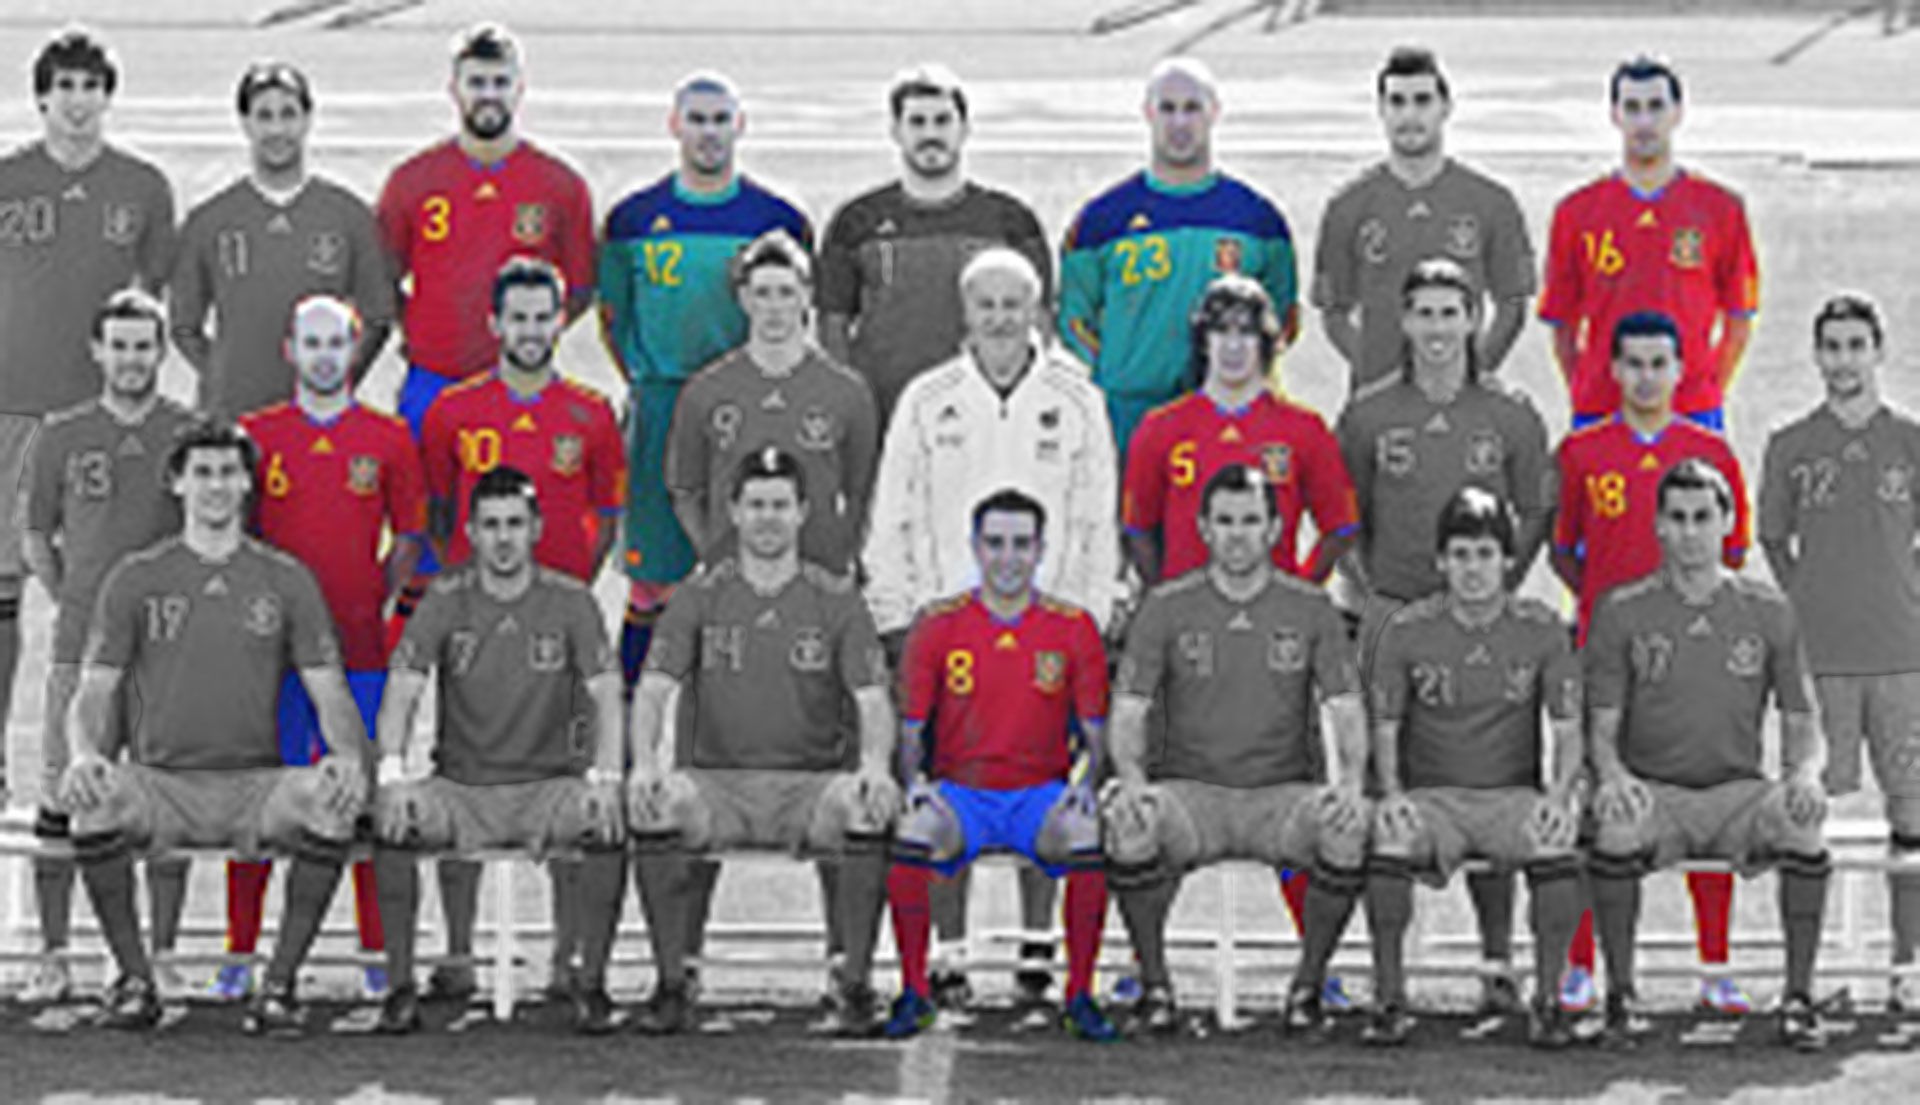 Arriba de izquierda a derecha: Gerard Piqué, Victor Valdés, Pepe Reina, Sergio Busquets / Abajo de izquierda a derecha: Iniesta, Fábregas, Xavi, Puyol, Pedro